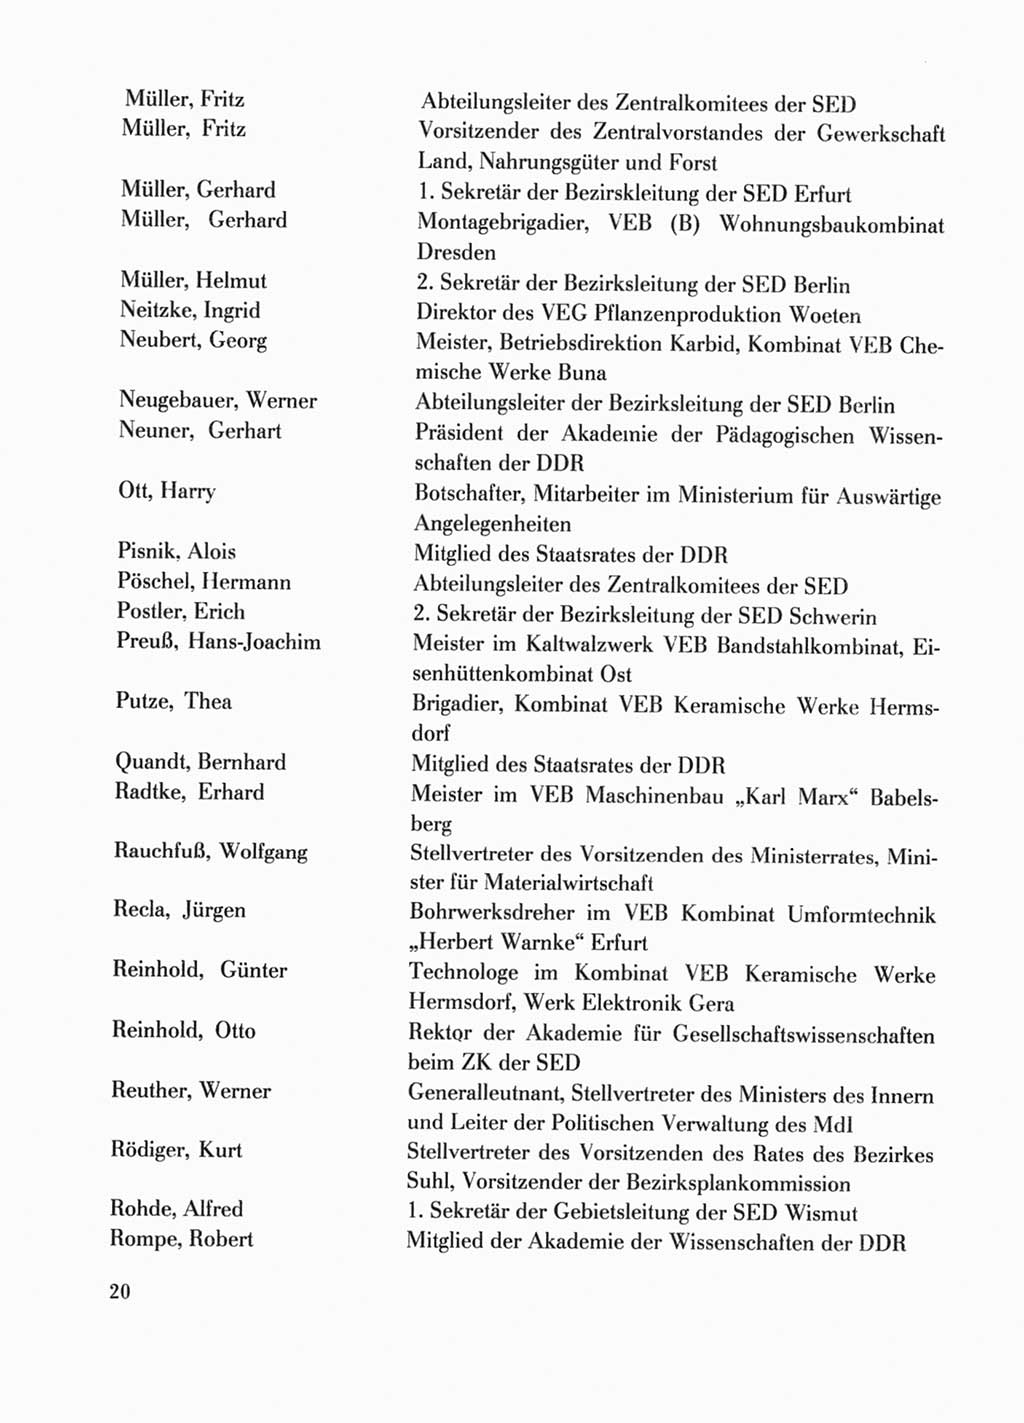 Protokoll der Verhandlungen des Ⅹ. Parteitages der Sozialistischen Einheitspartei Deutschlands (SED) [Deutsche Demokratische Republik (DDR)] 1981, Band 1, Seite 20 (Prot. Verh. Ⅹ. PT SED DDR 1981, Bd. 1, S. 20)